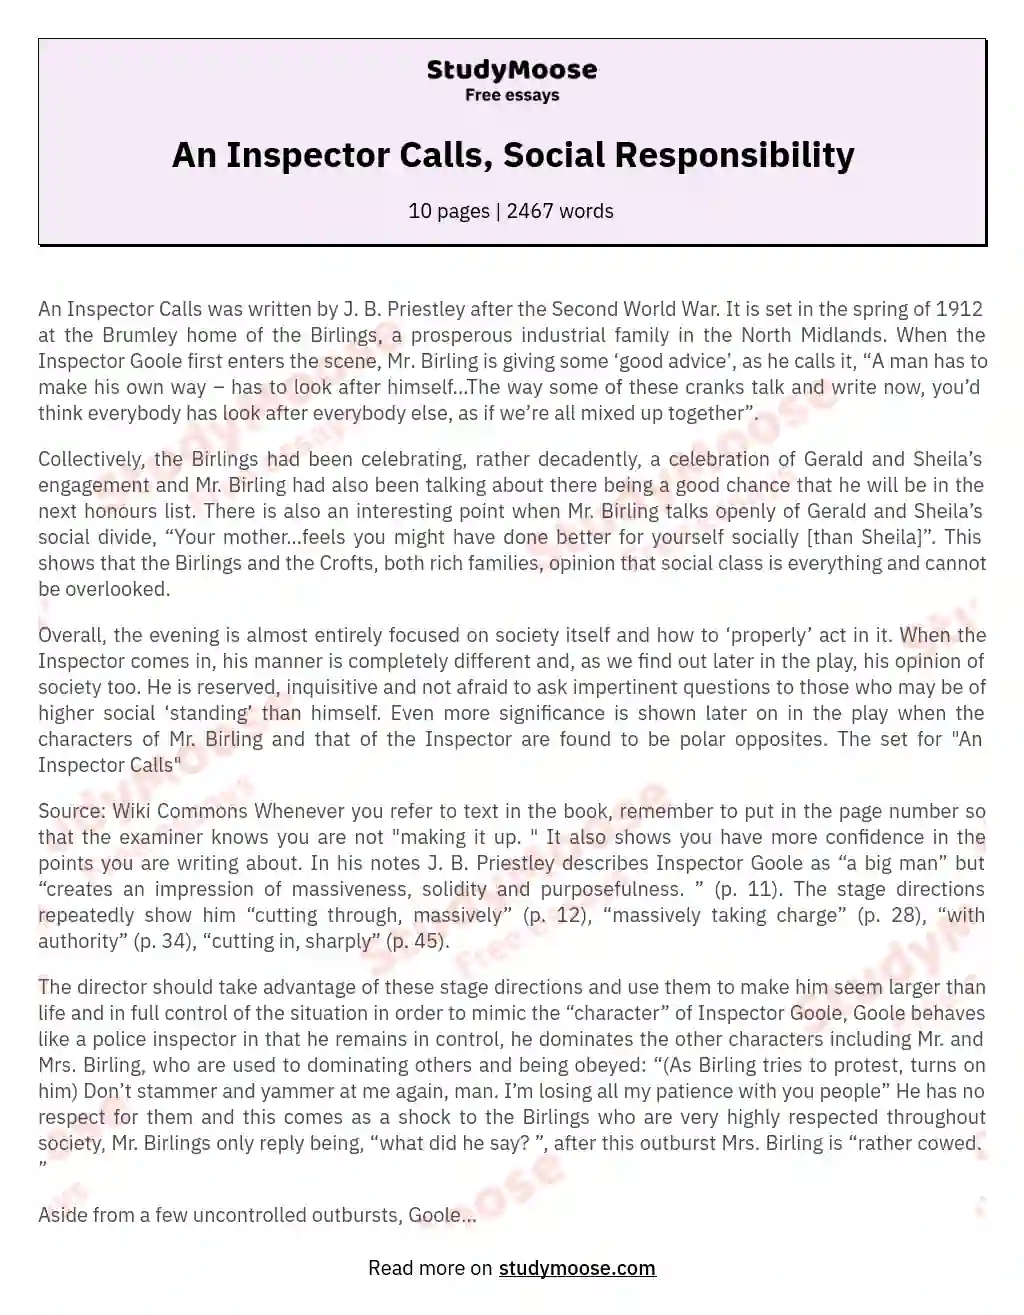 An Inspector Calls, Social Responsibility essay